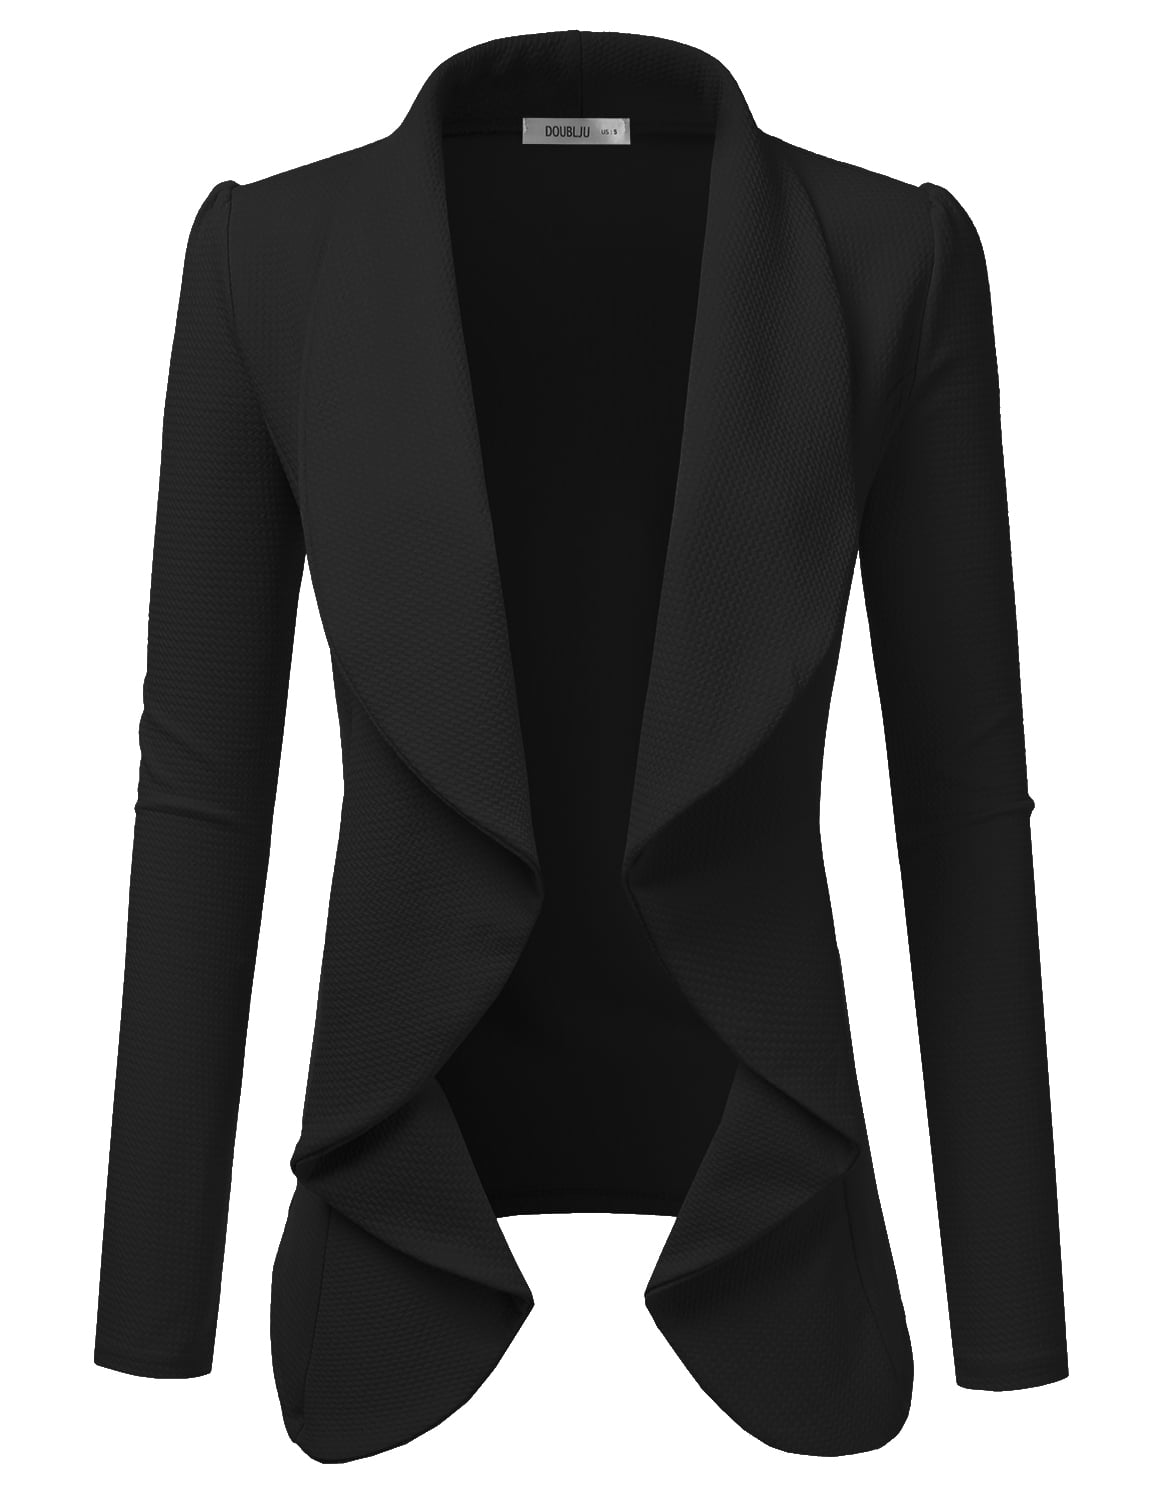 Doublju Women's Blazer Long Sleeve Open Front Lightweight Casual Office ...